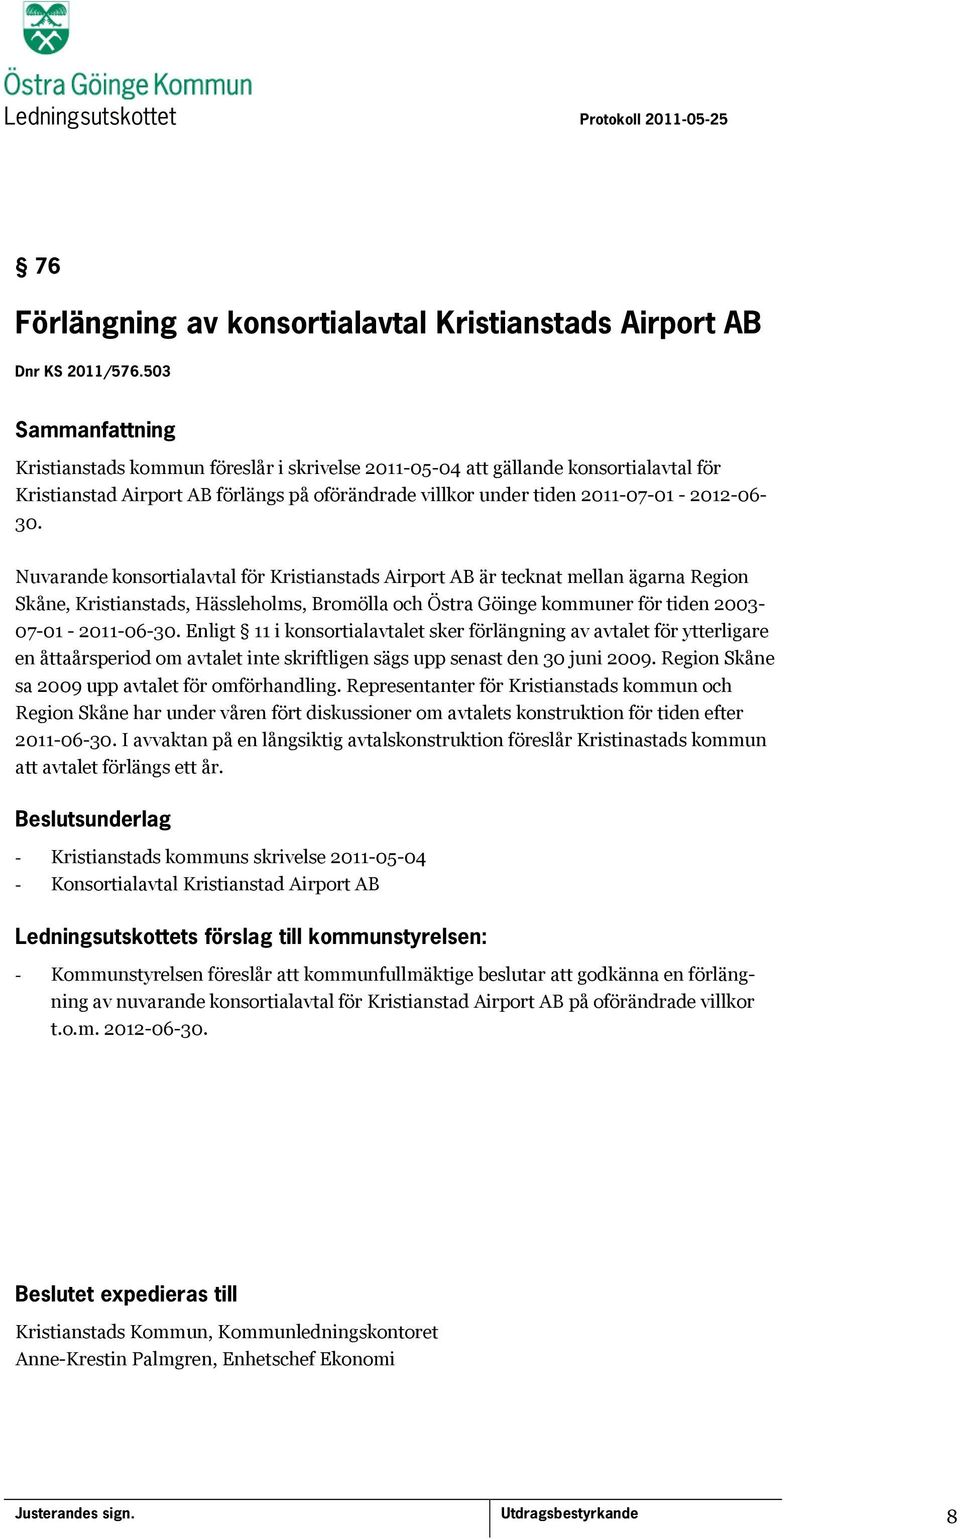 Nuvarande konsortialavtal för Kristianstads Airport AB är tecknat mellan ägarna Region Skåne, Kristianstads, Hässleholms, Bromölla och Östra Göinge kommuner för tiden 2003-07-01-2011-06-30.